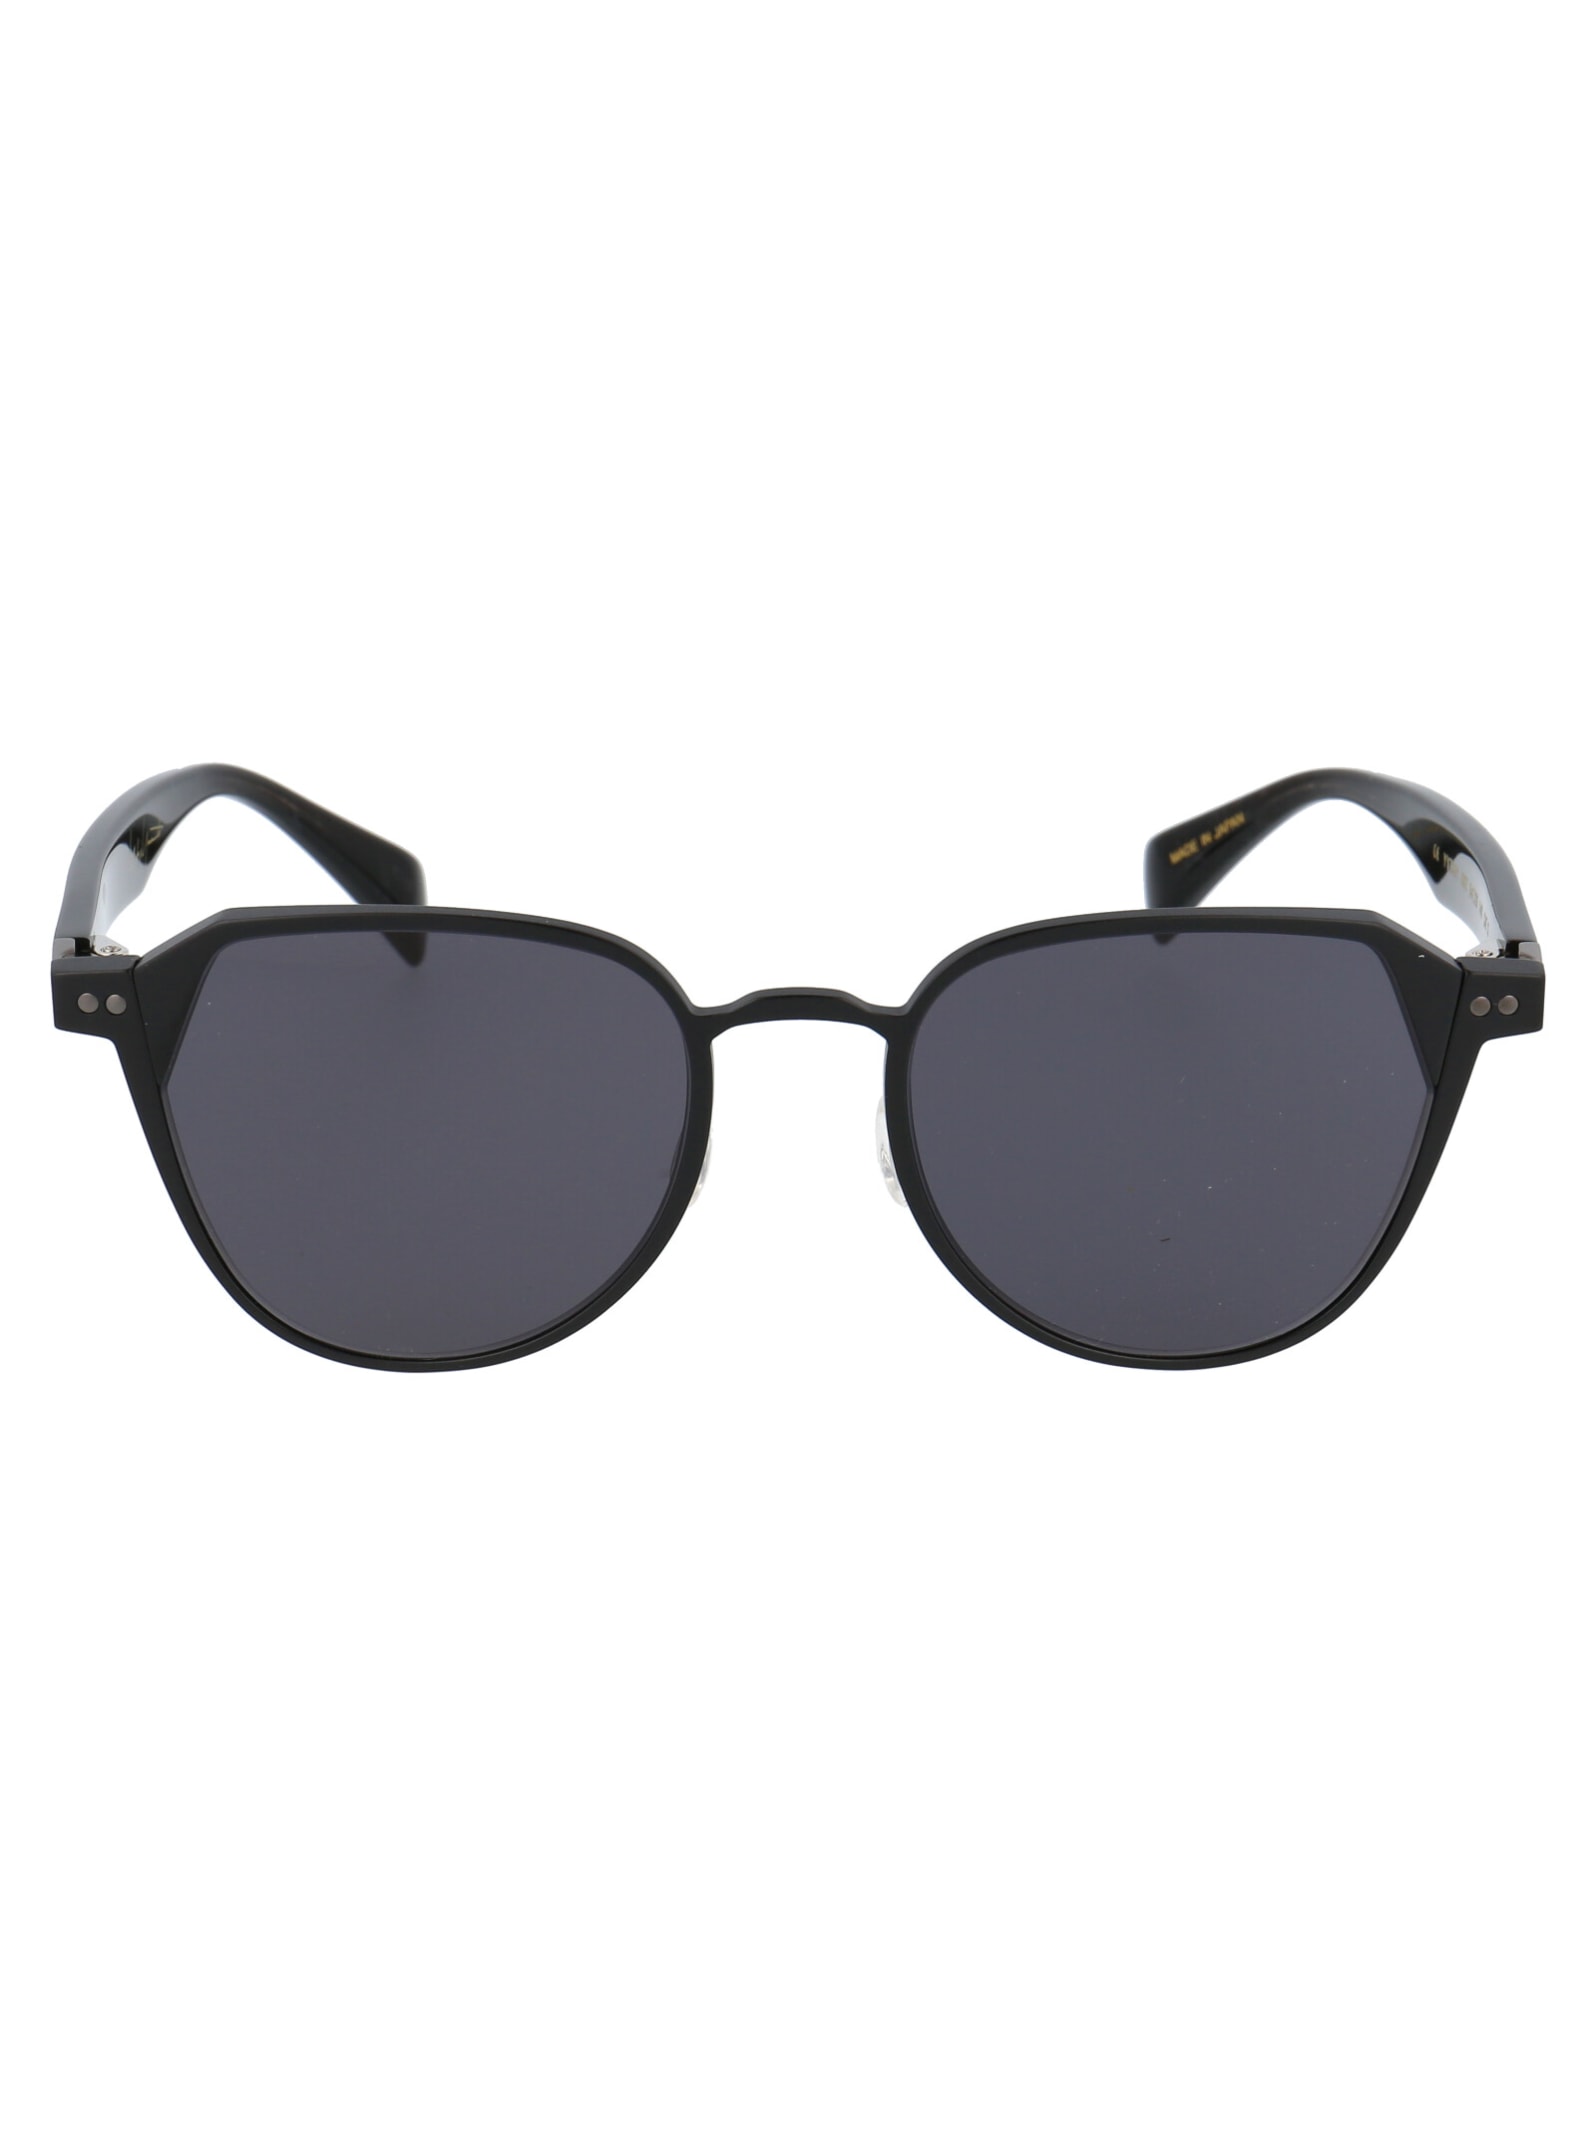 Yohji Yamamoto Yy7041 Sunglasses